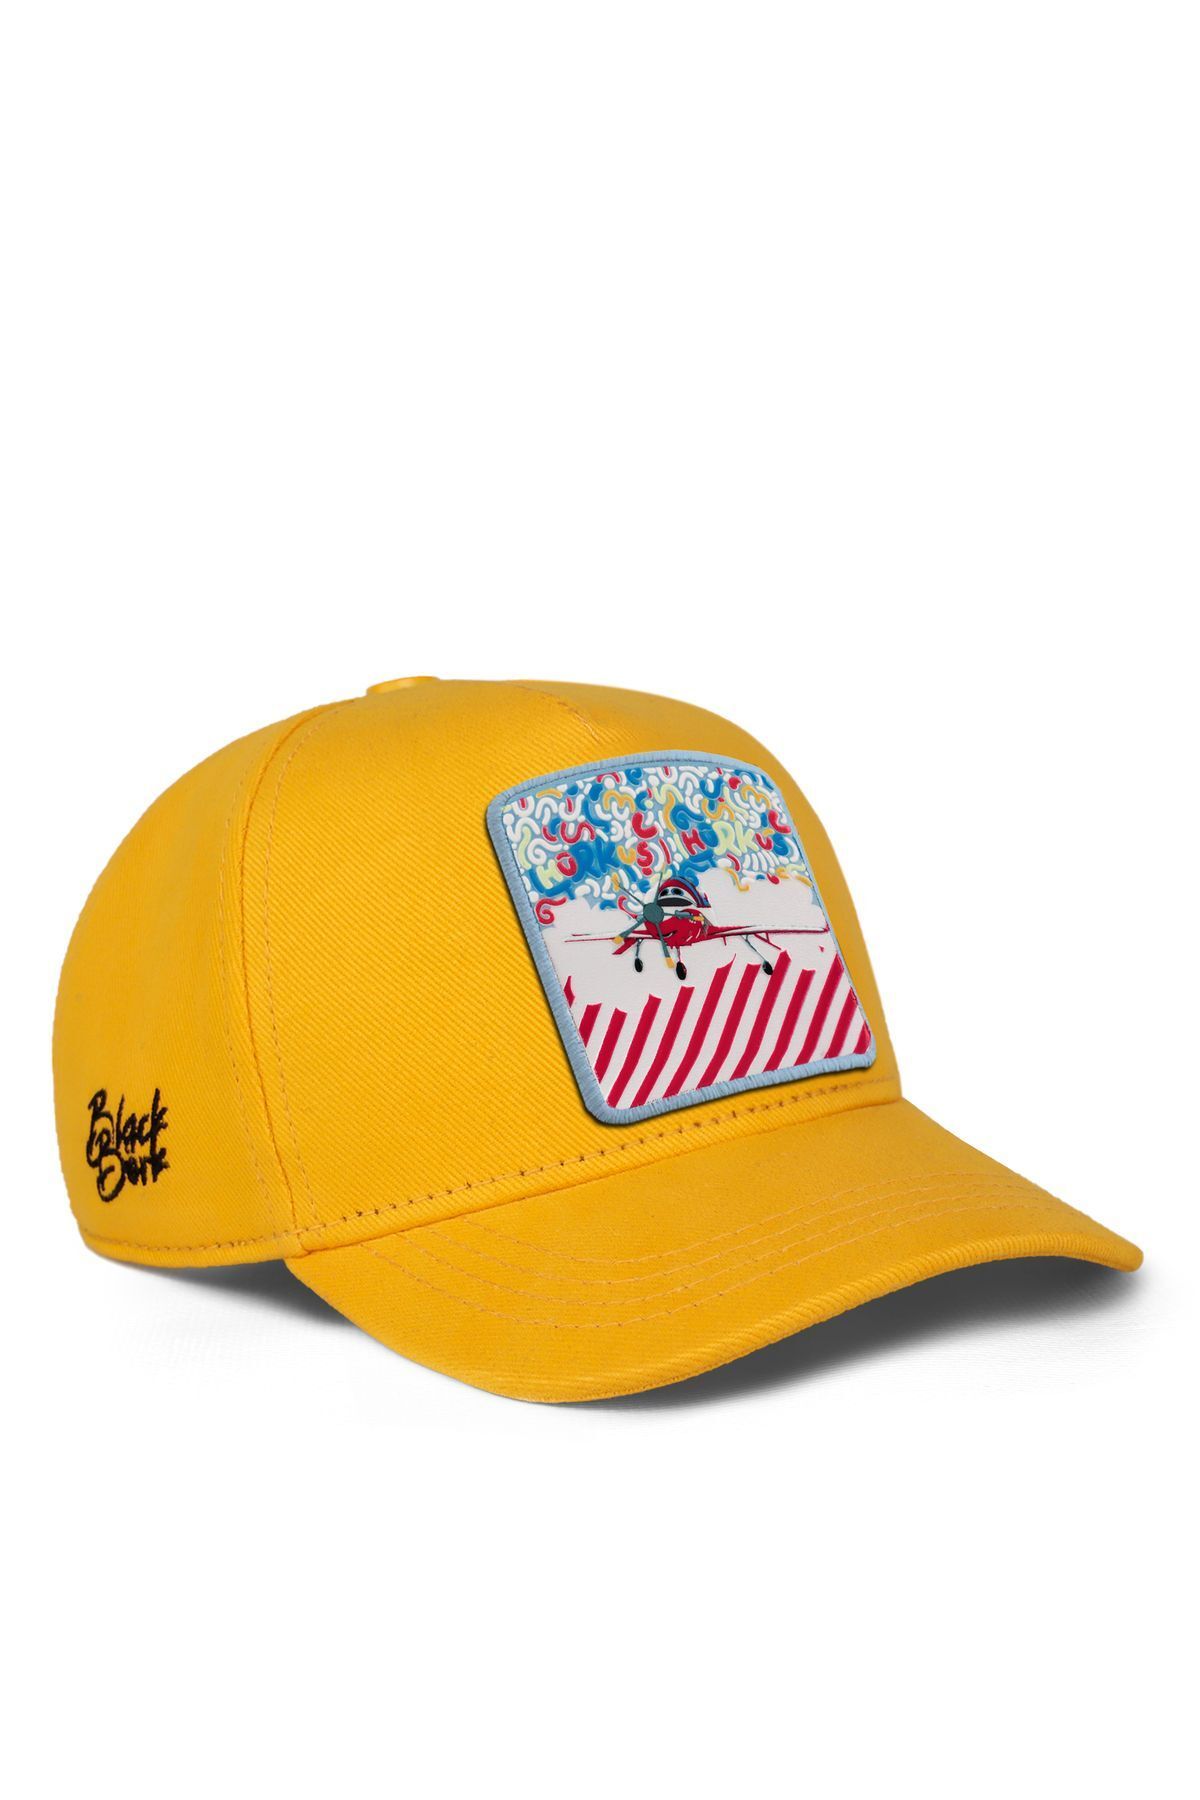 BlackBörk V1 Baseball Karnaval Hürkuş Lisanlı Sarı Çocuk Şapka